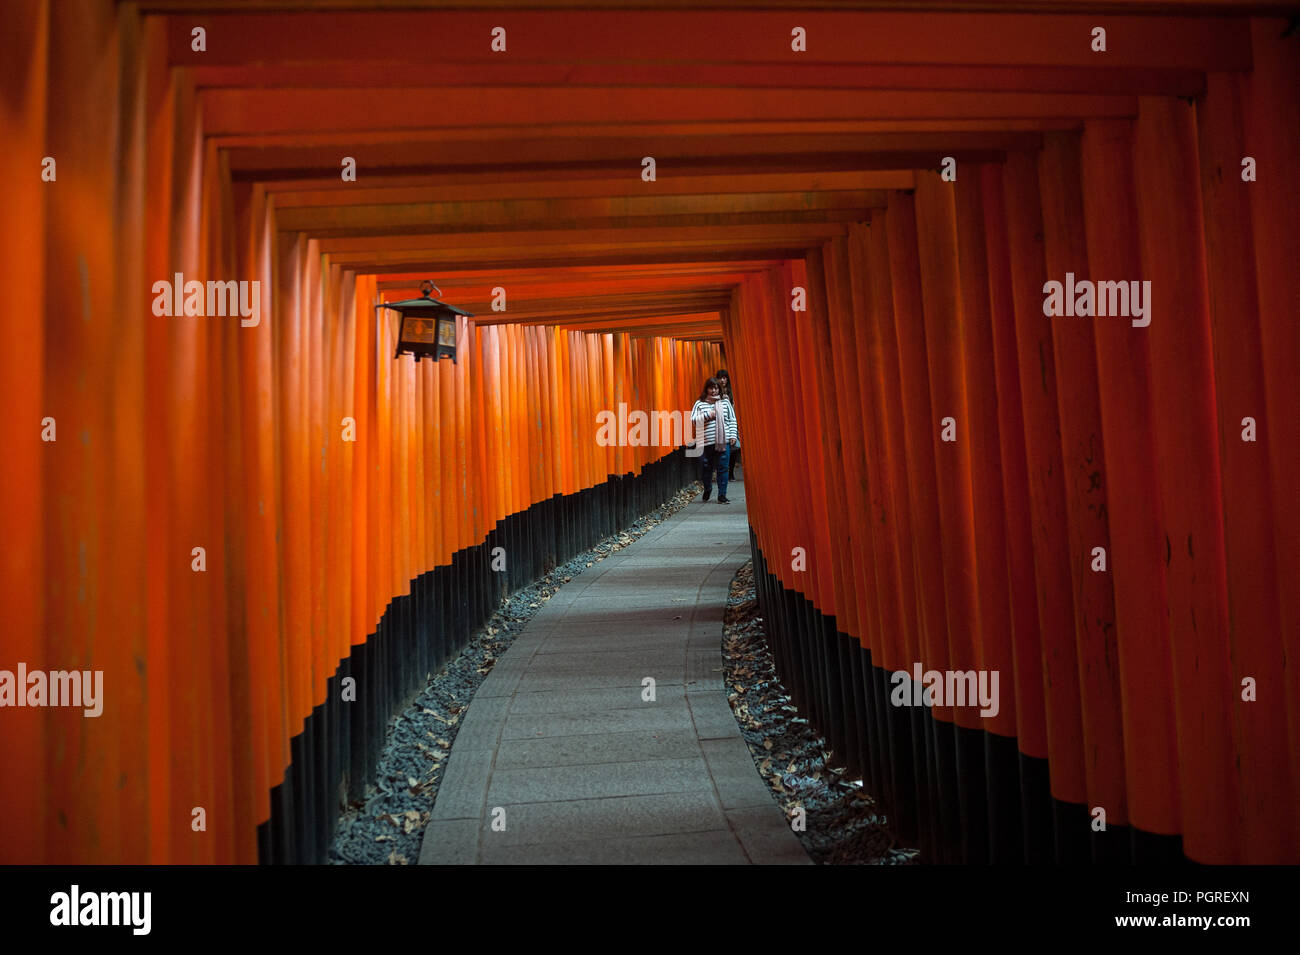 24.12.2017, Kyoto, Giappone, Asia - Una vista interna di uno dei Torii sentieri che conducono a Fushimi Inari Taisha, un santuario scintoista di Kyoto. Foto Stock